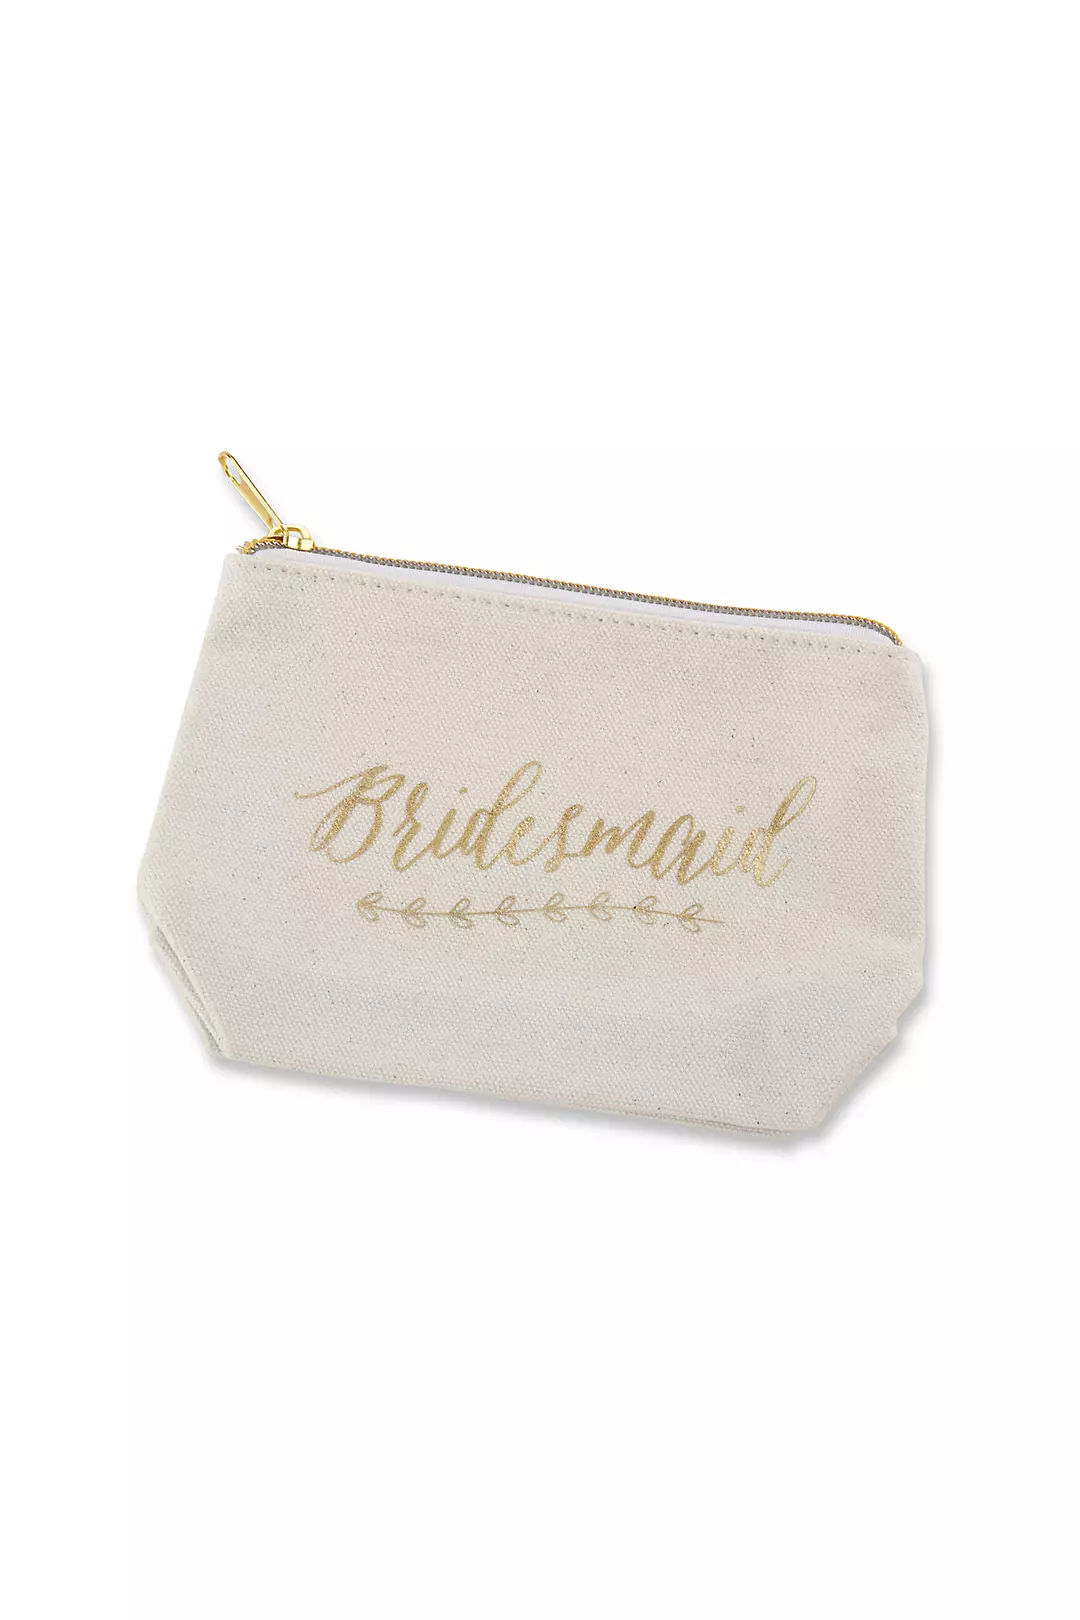 Gold Foil Bridesmaid Canvas Makeup Bag Image